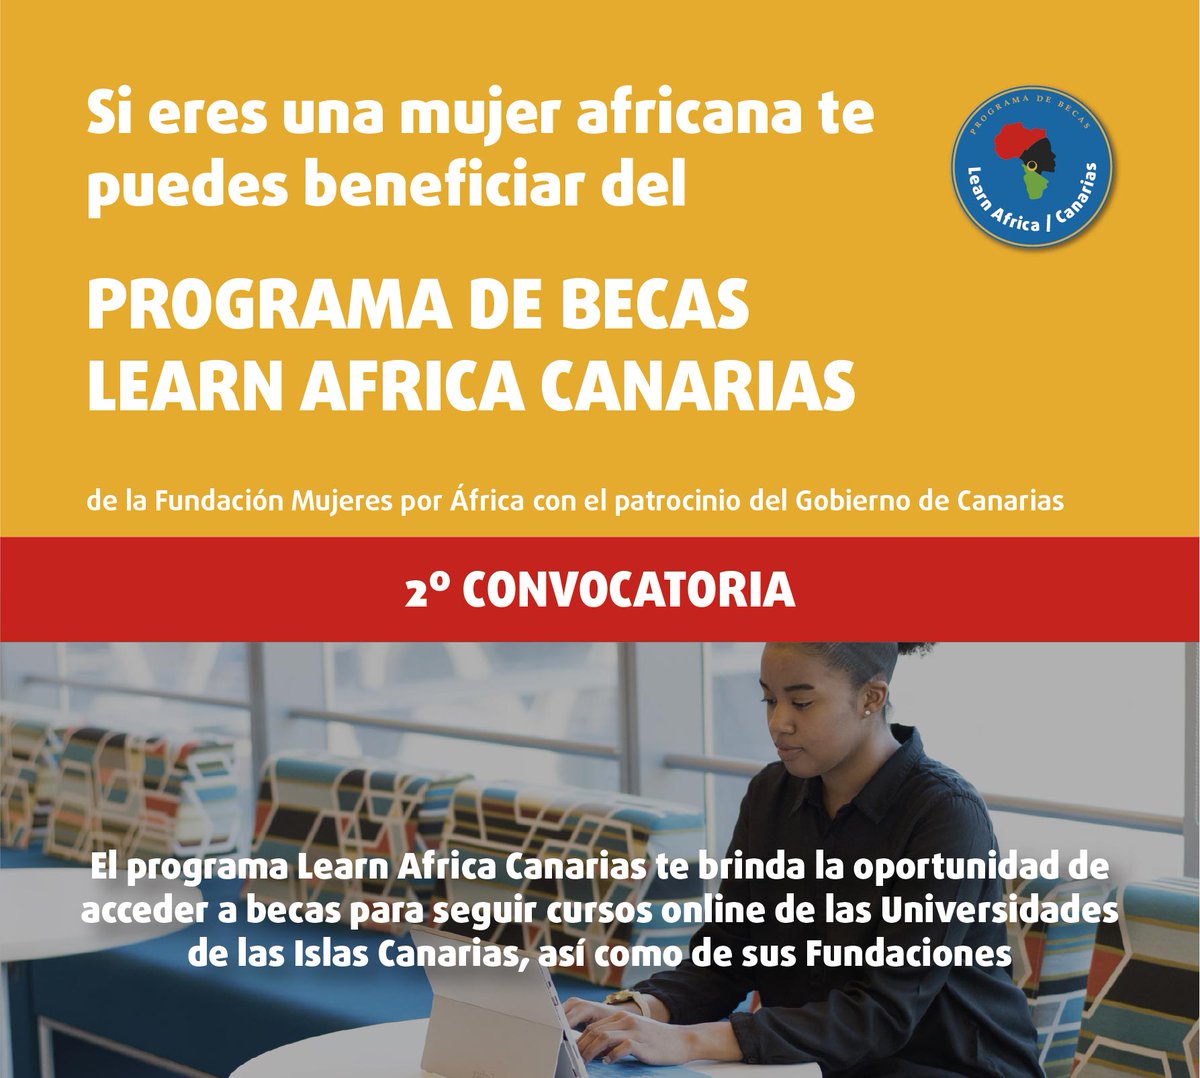 El programa #LearnAfrica Canarias brinda a universitarias del continente vecino la oportunidad de acceder a becas para seguir cursos online de las universidades de las islas canarias, así como de sus fundaciones 

cutt.ly/hxknuFh

@EcoGobCan @dgaeue @MujeresxAfrica